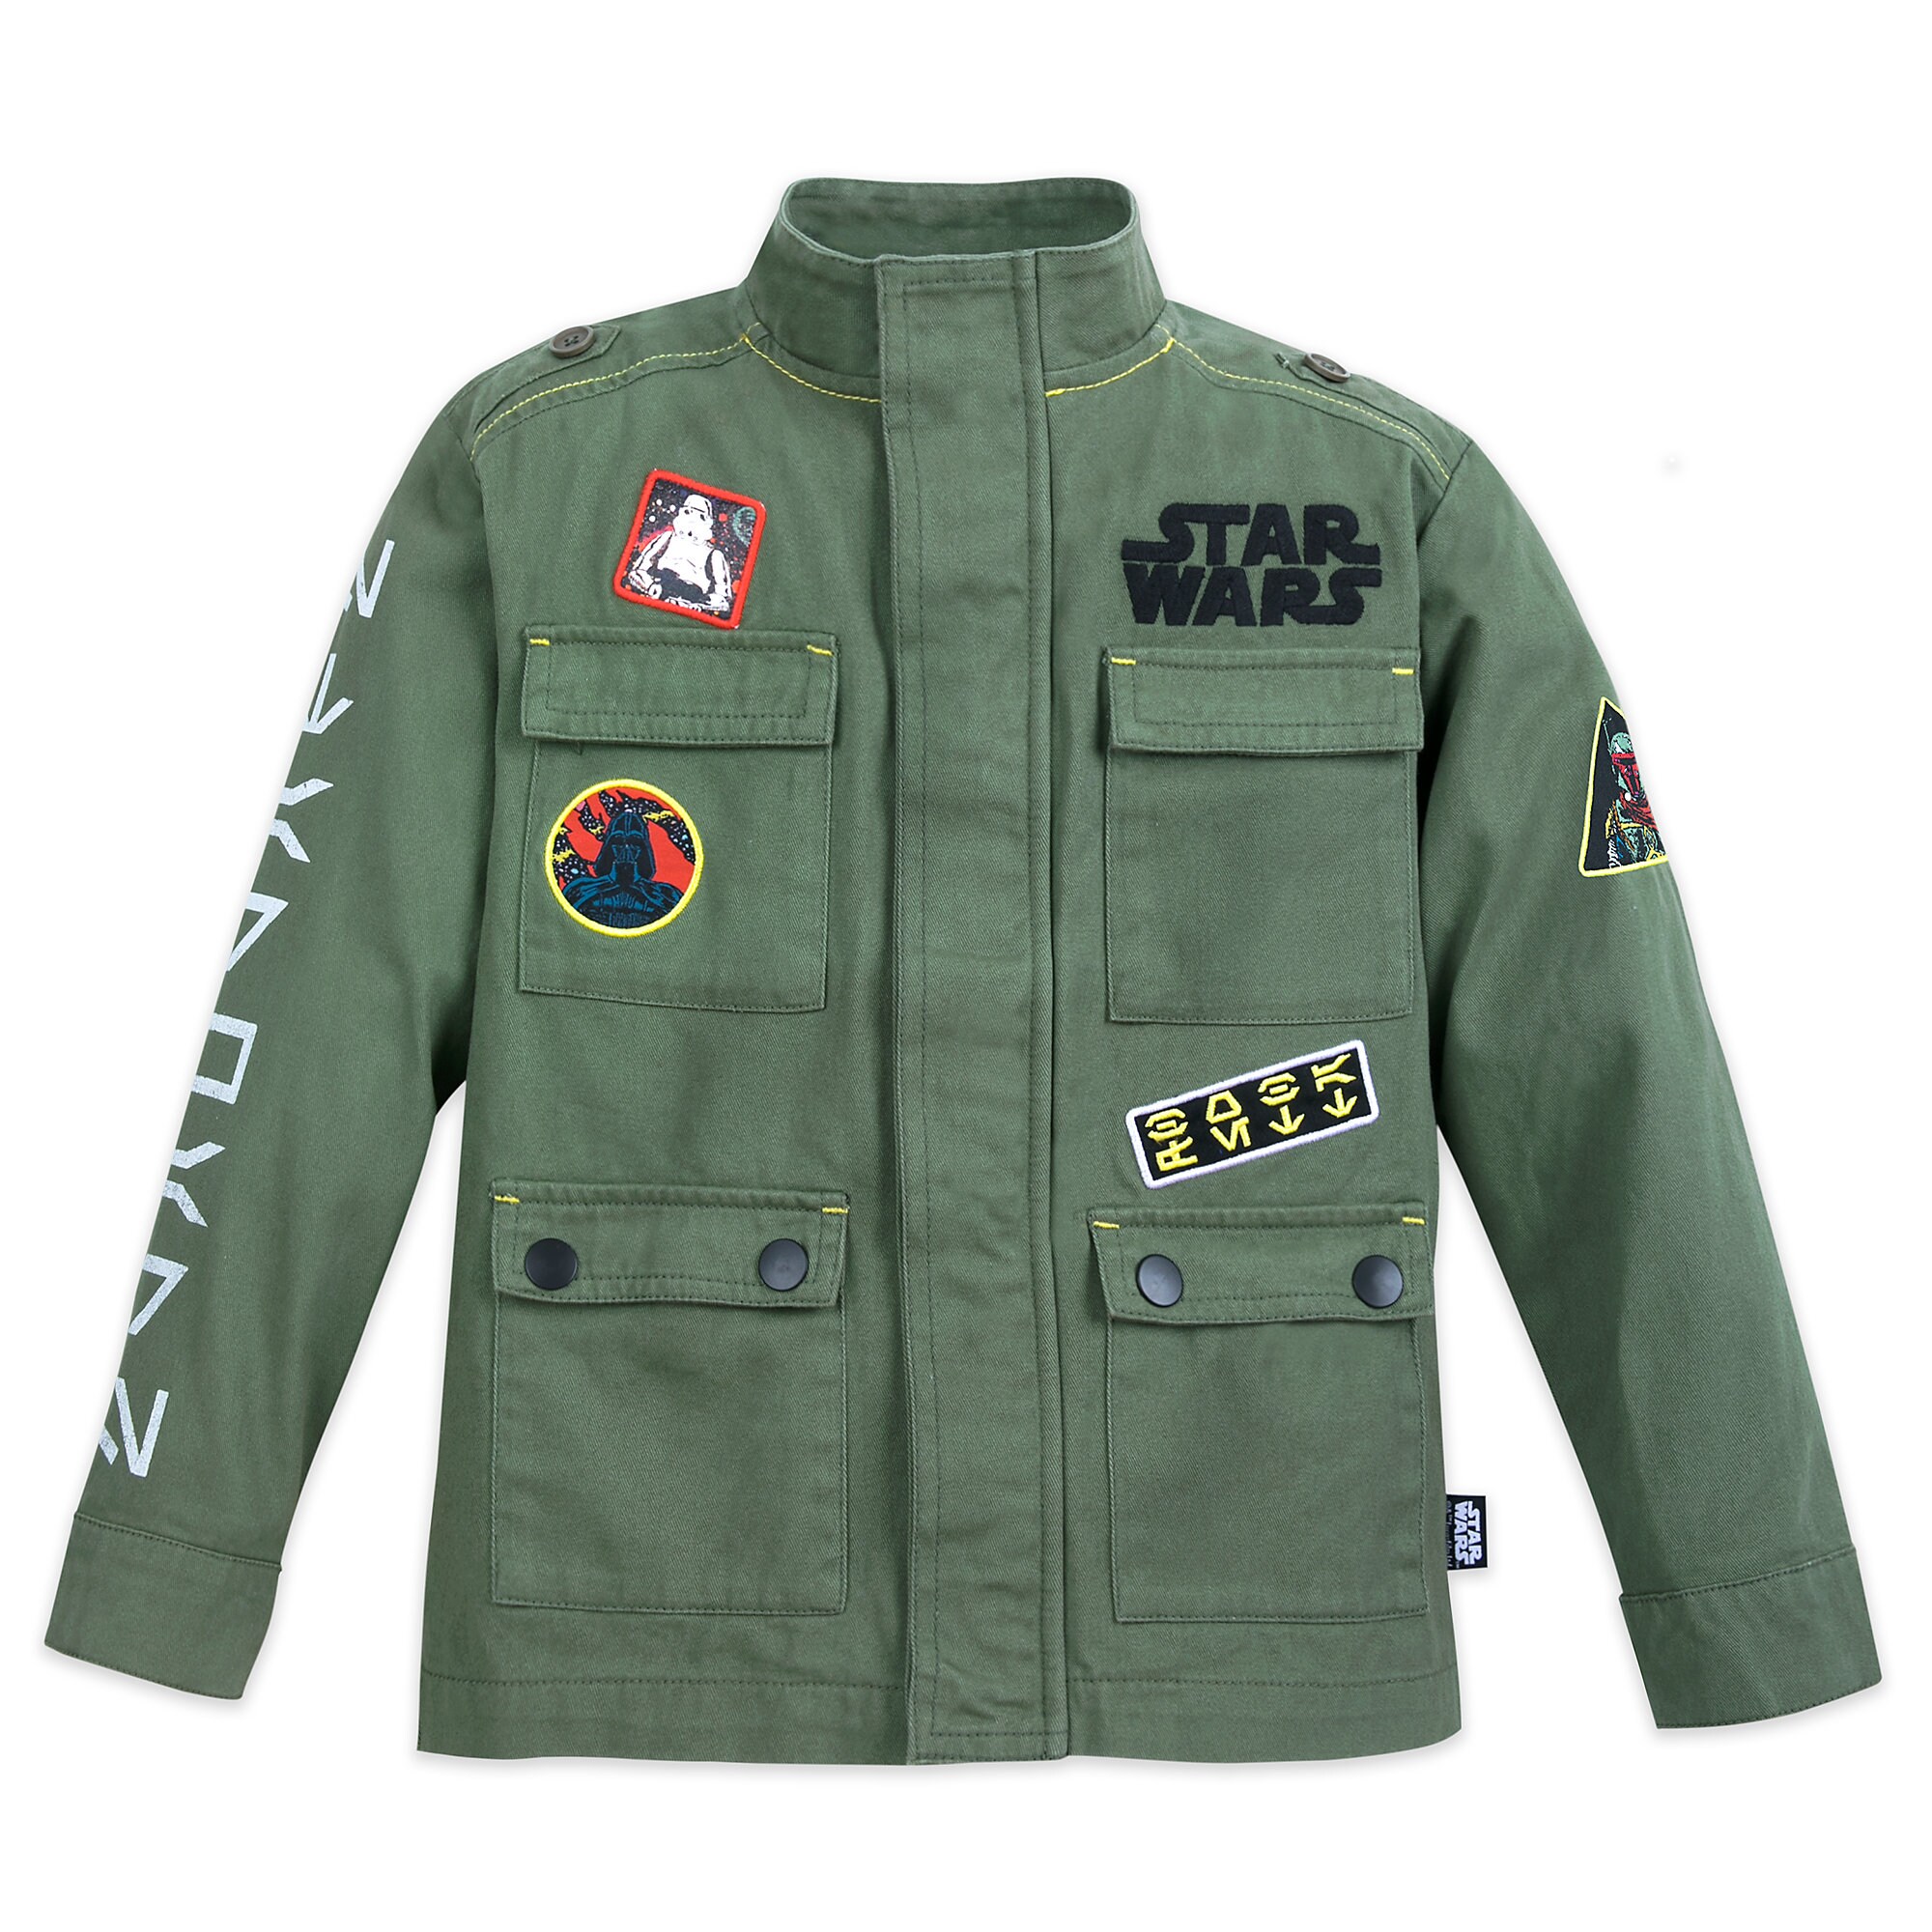 Star Wars Field Jacket for Kids